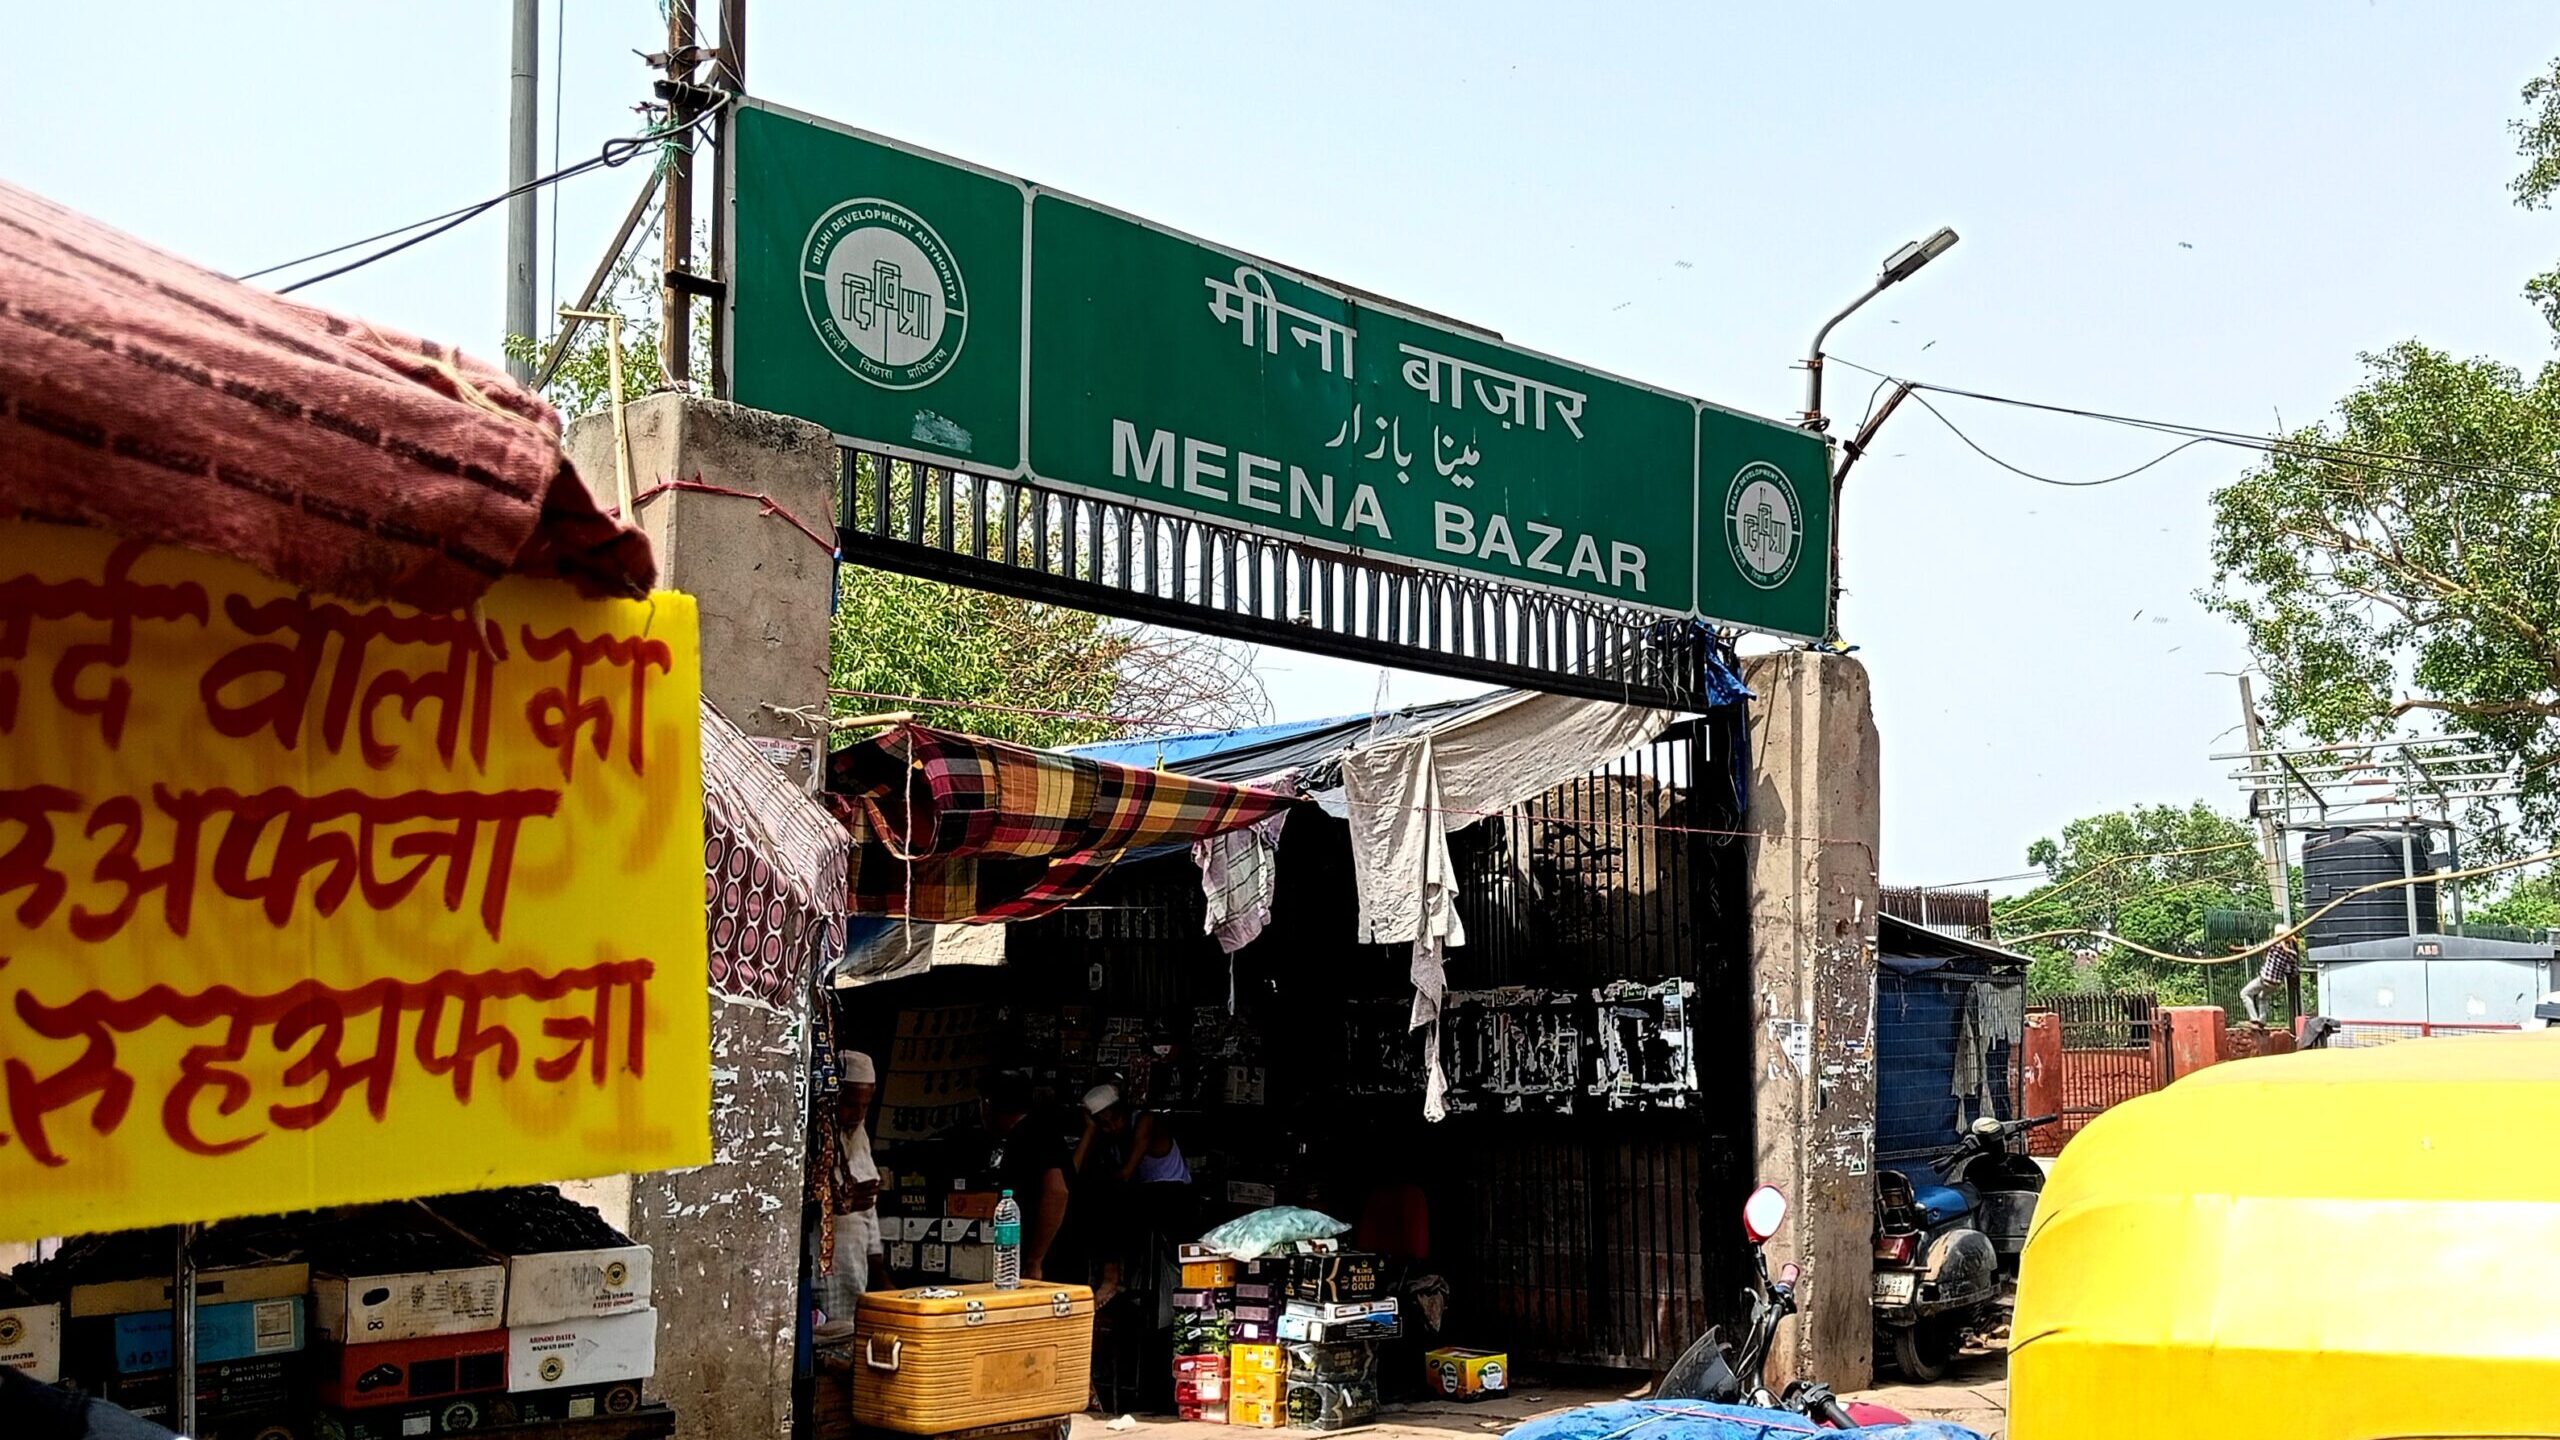 Meena Bazaar: City’s heritage market on its last legs